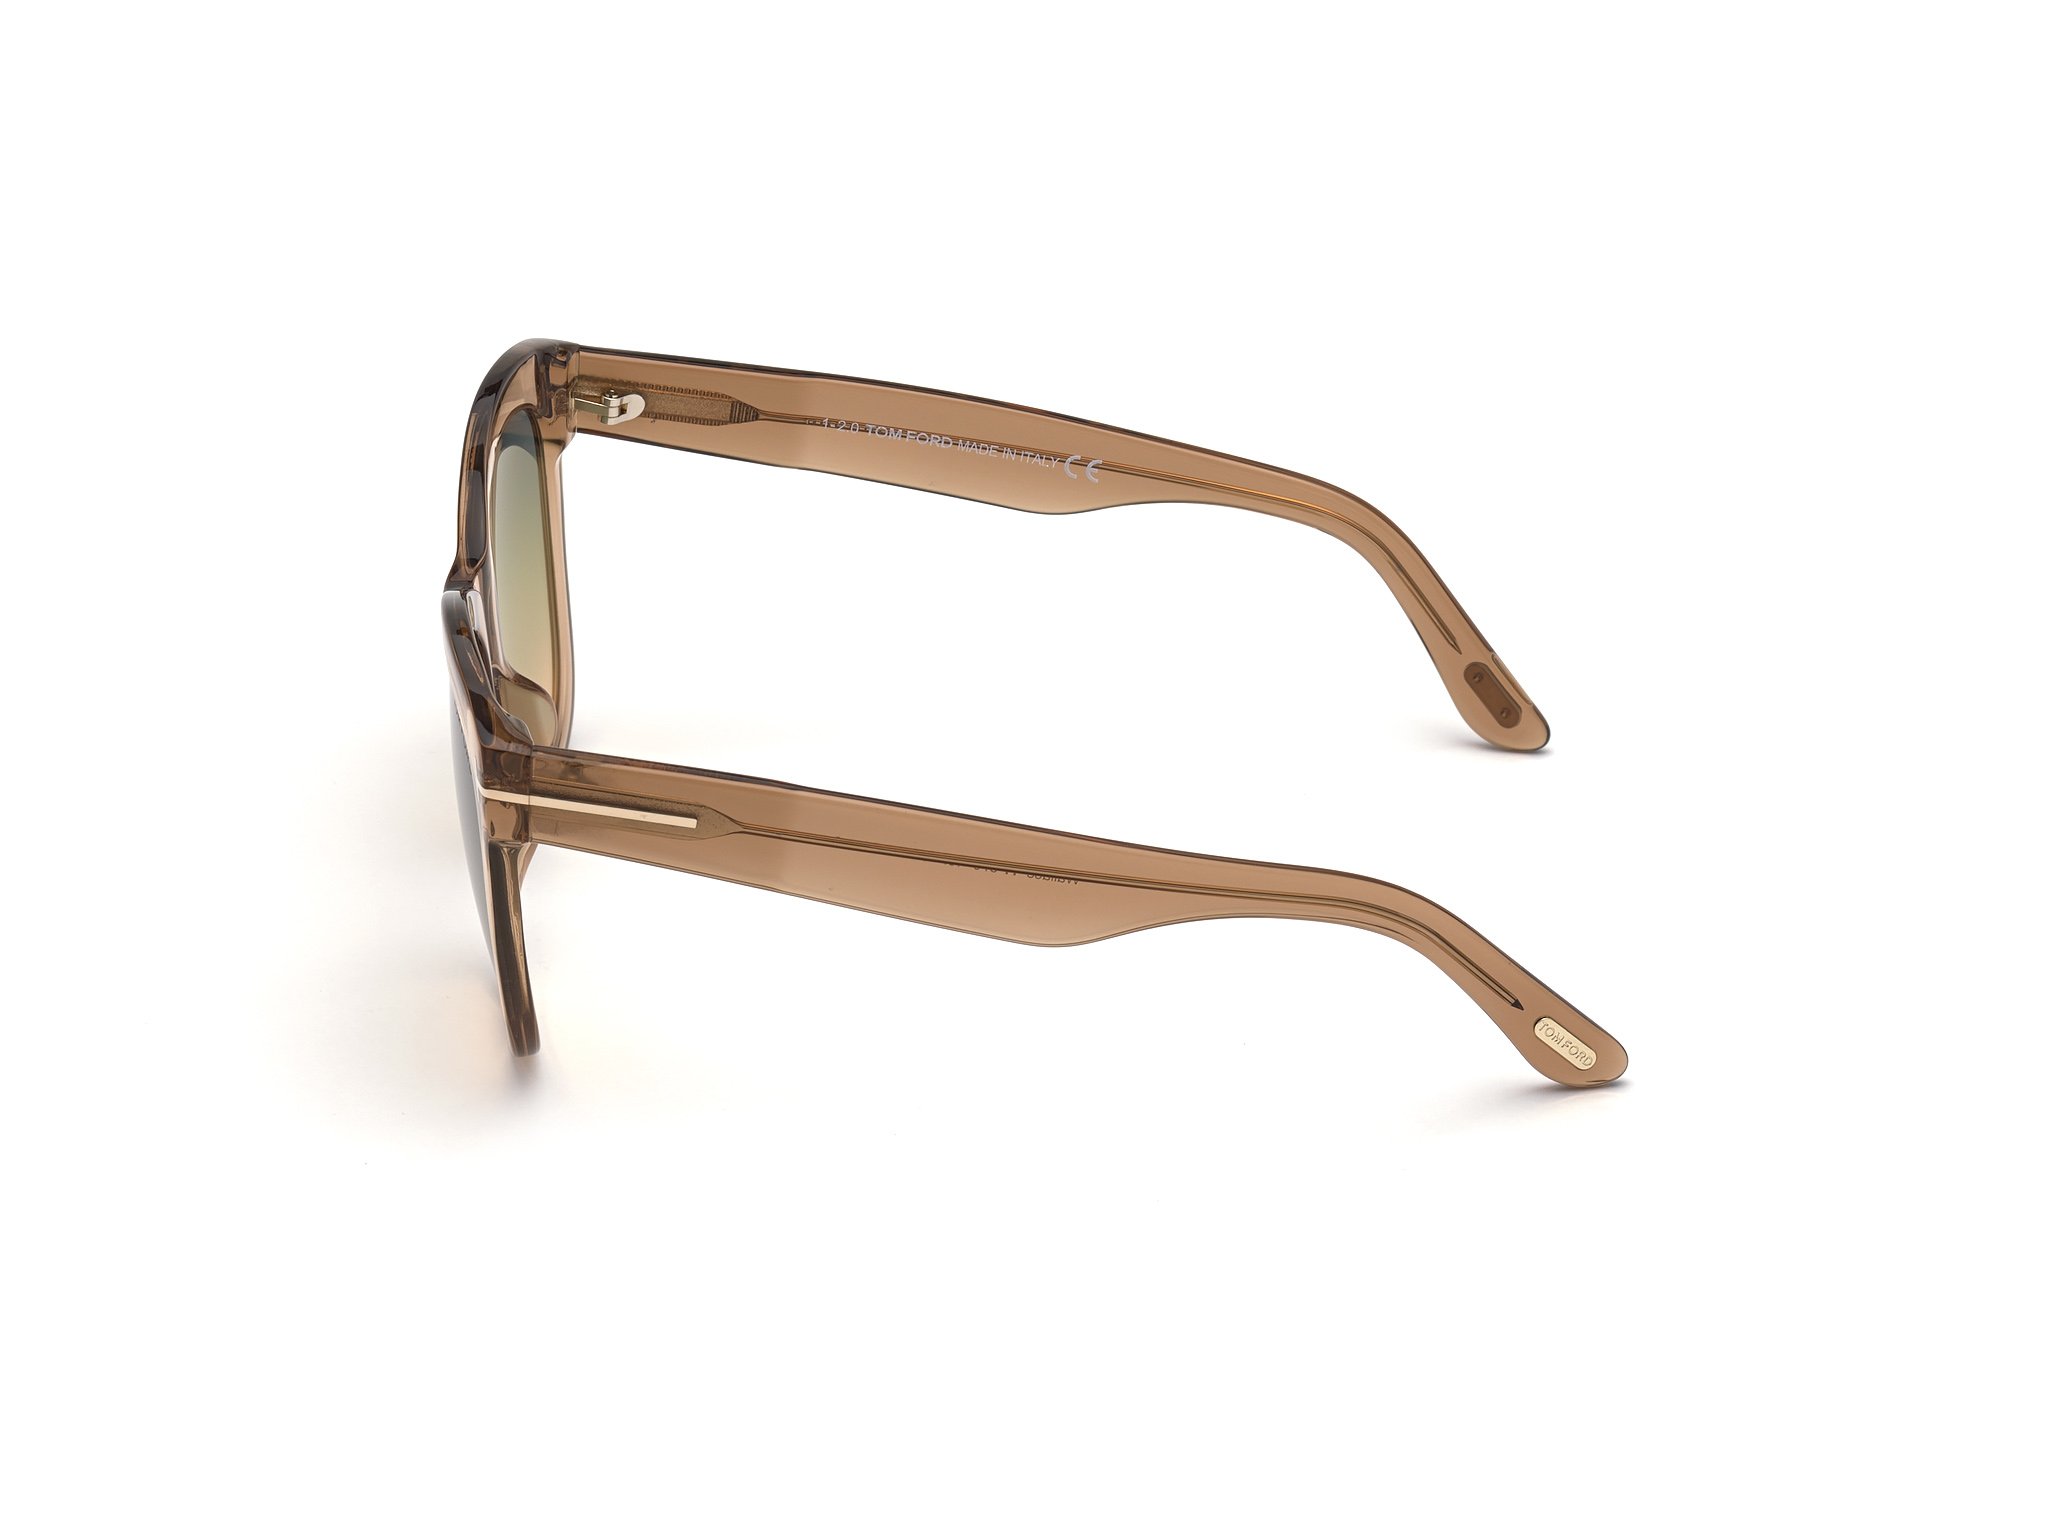 Das Bild zeigt die Sonnenbrille FT0870 45P von der Marke Tom Ford in braun.